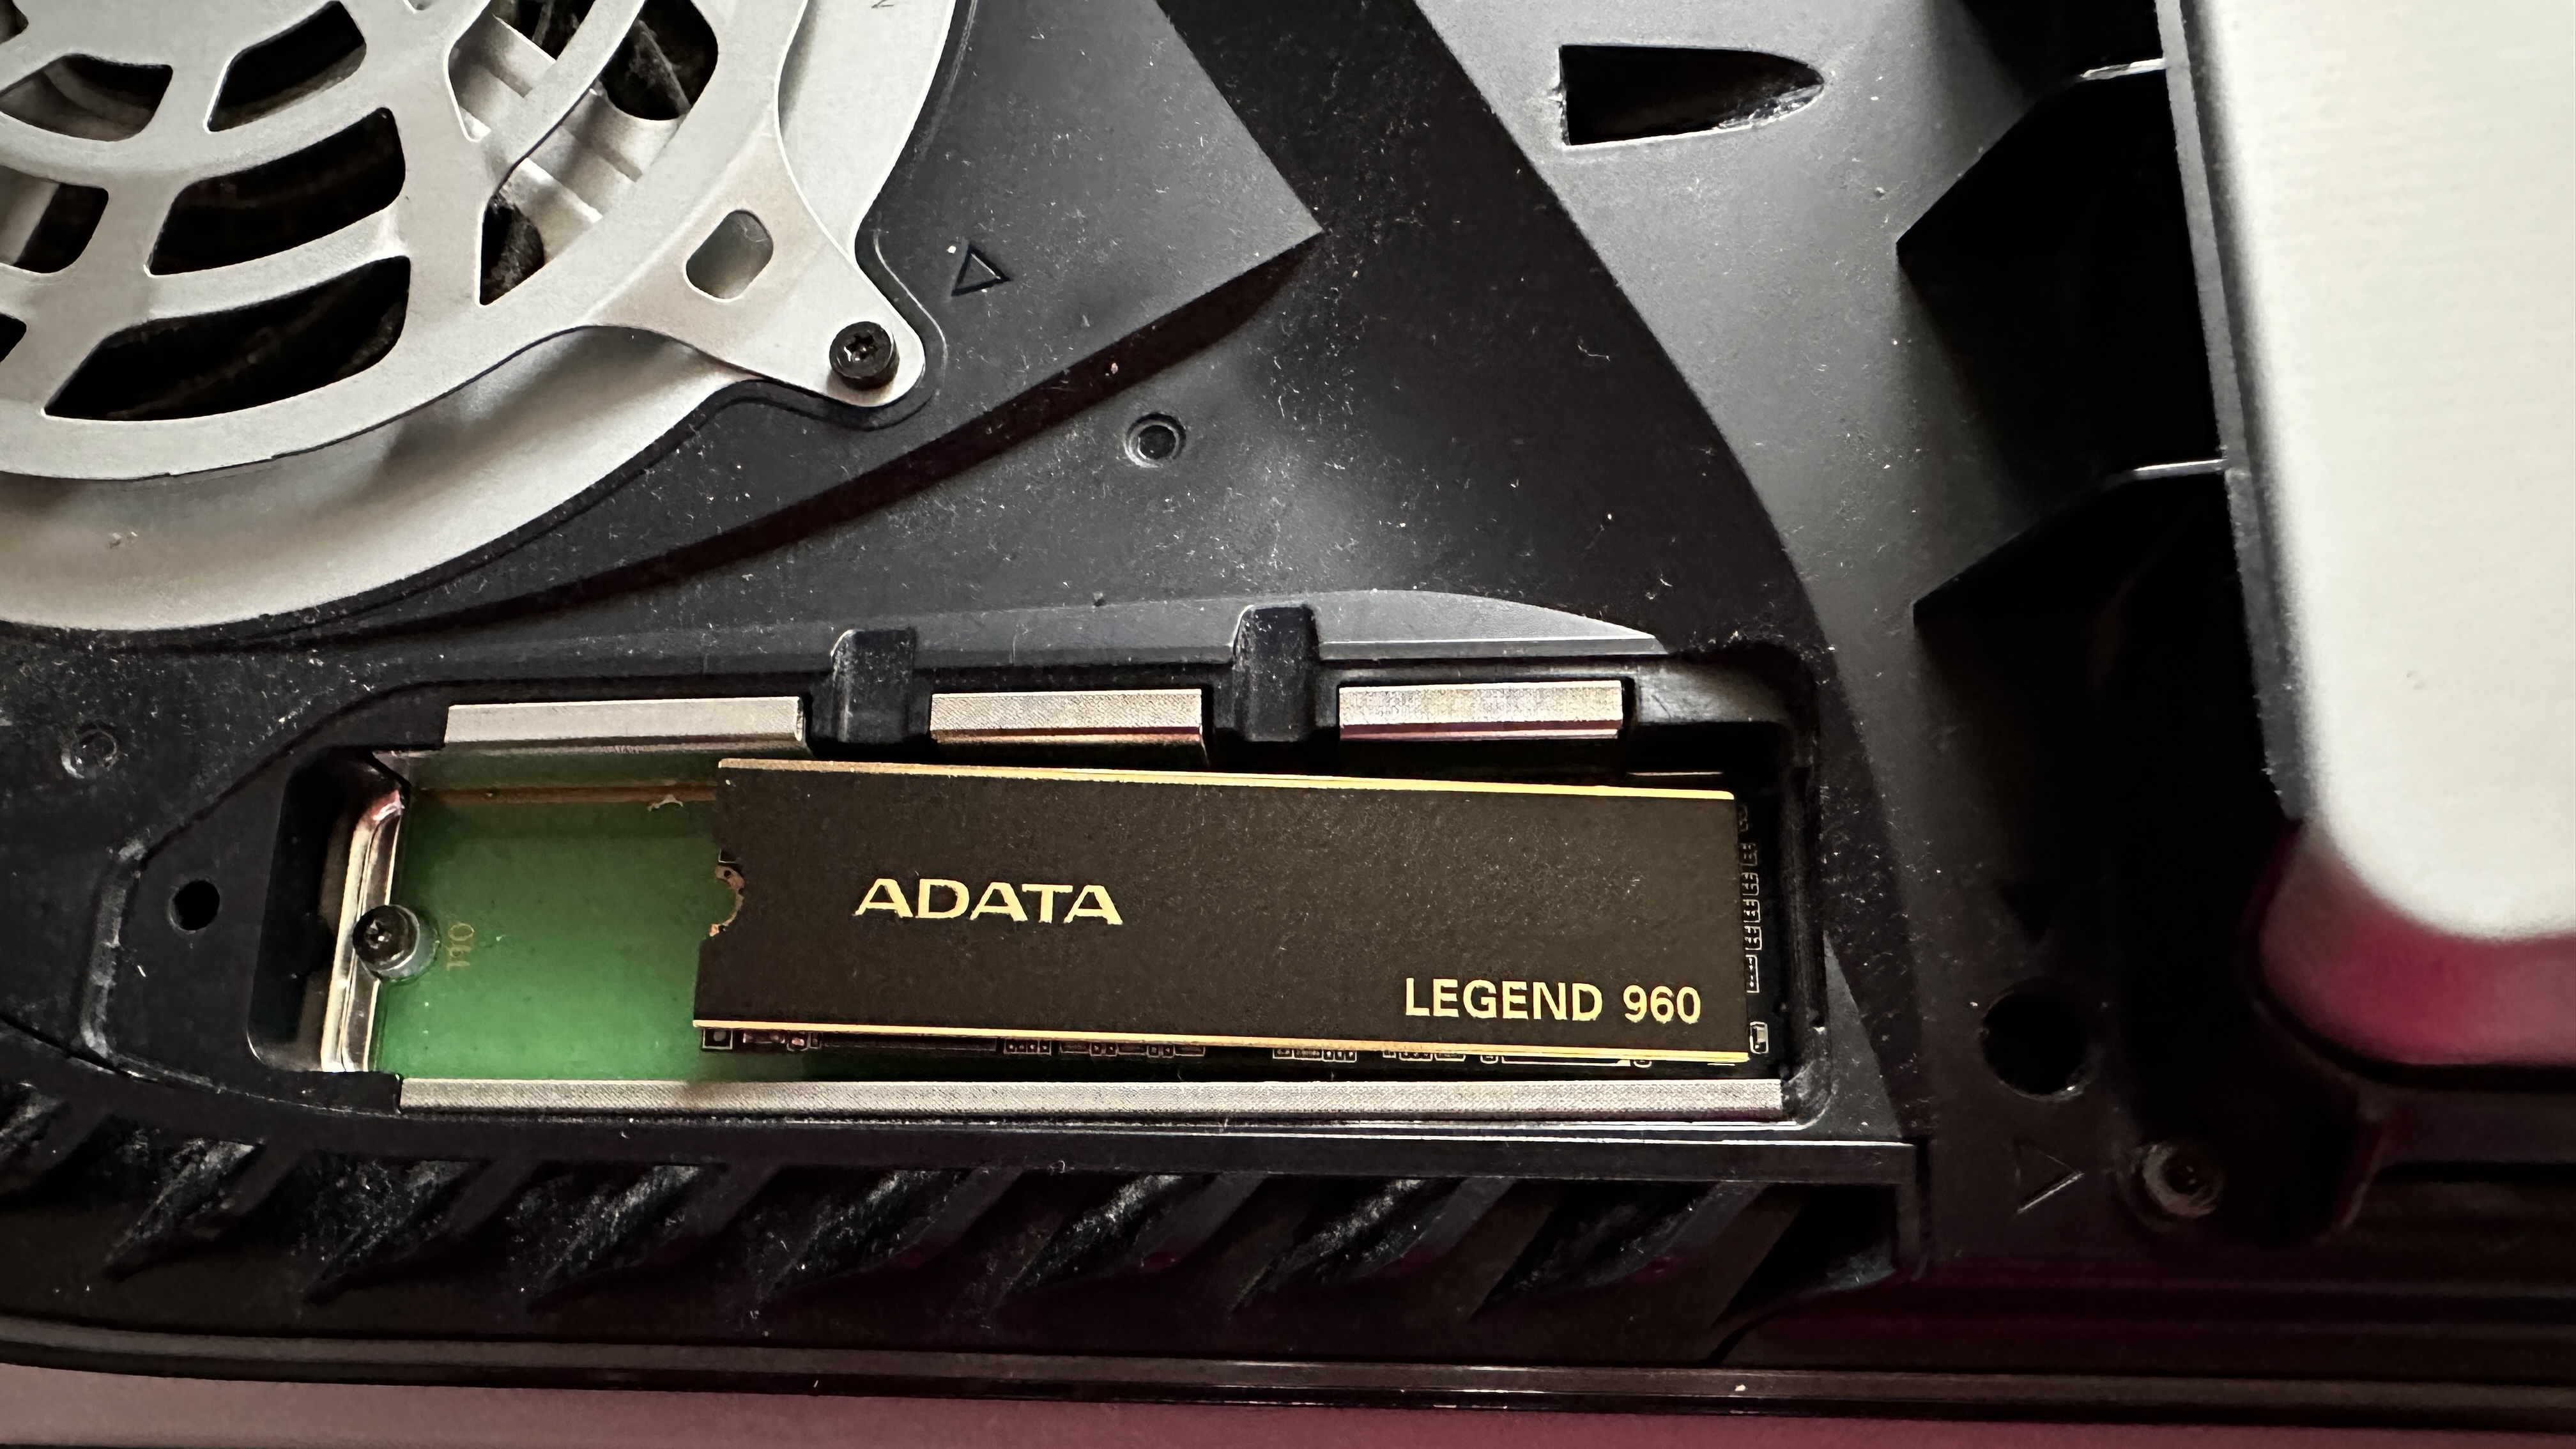 Adata Legend 960 in PS5